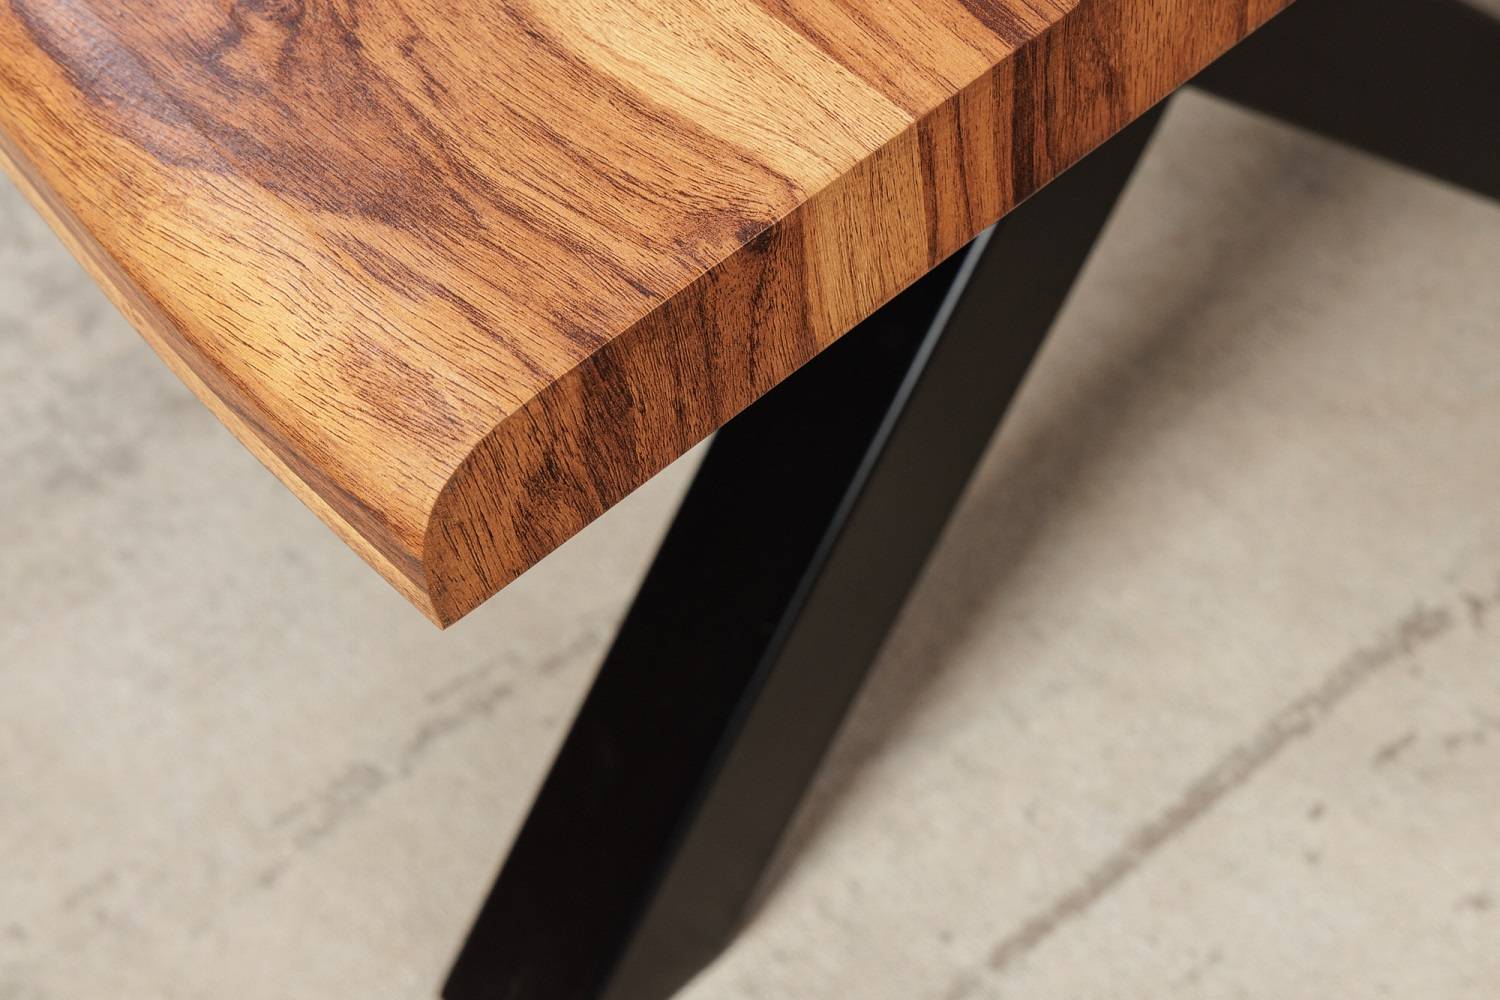 Designový jídelní stůl Kaniesa 160 cm vzor ořech